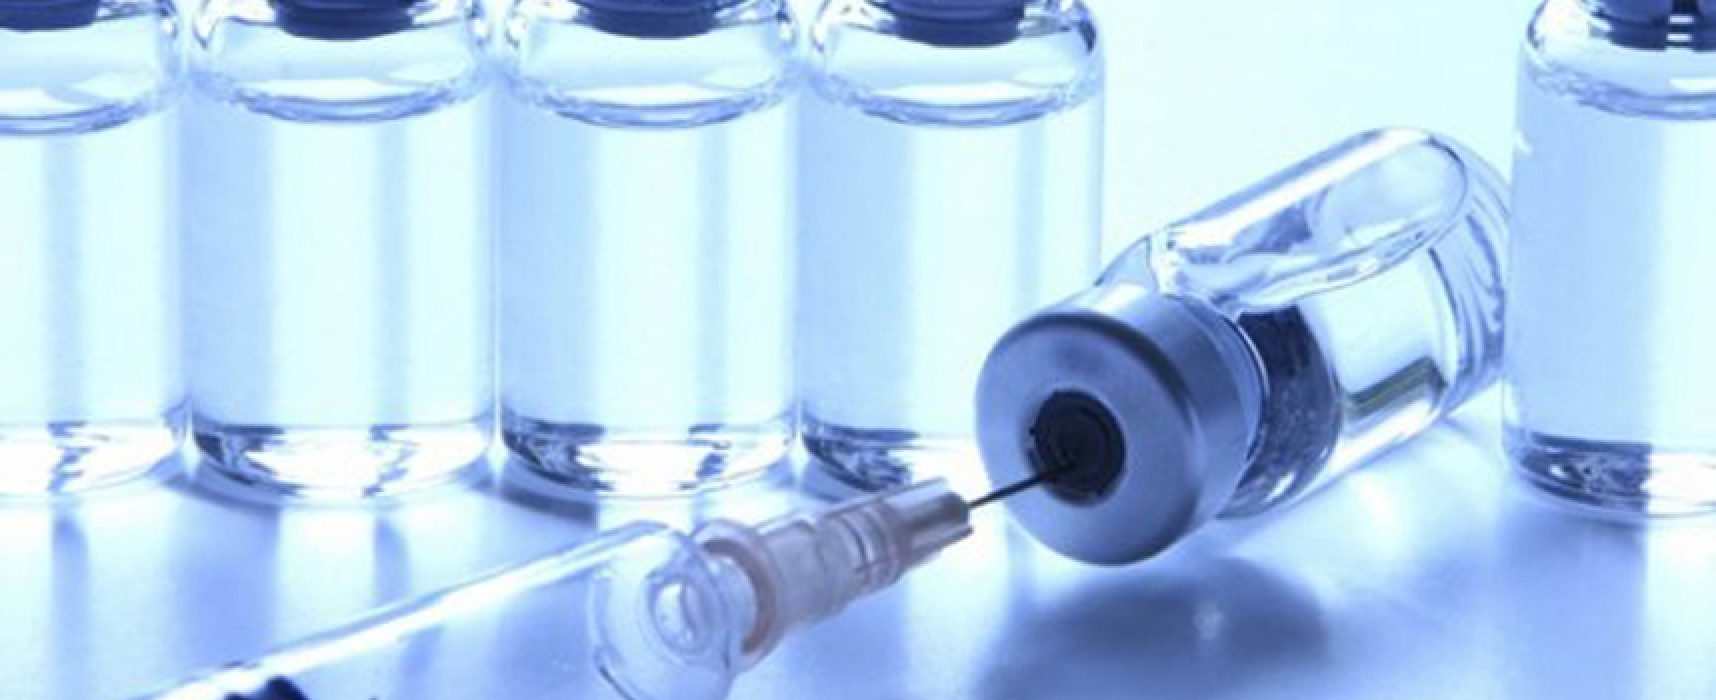 Consiglio regionale Puglia, via libera all’obbligo vaccinale per operatori sanitari